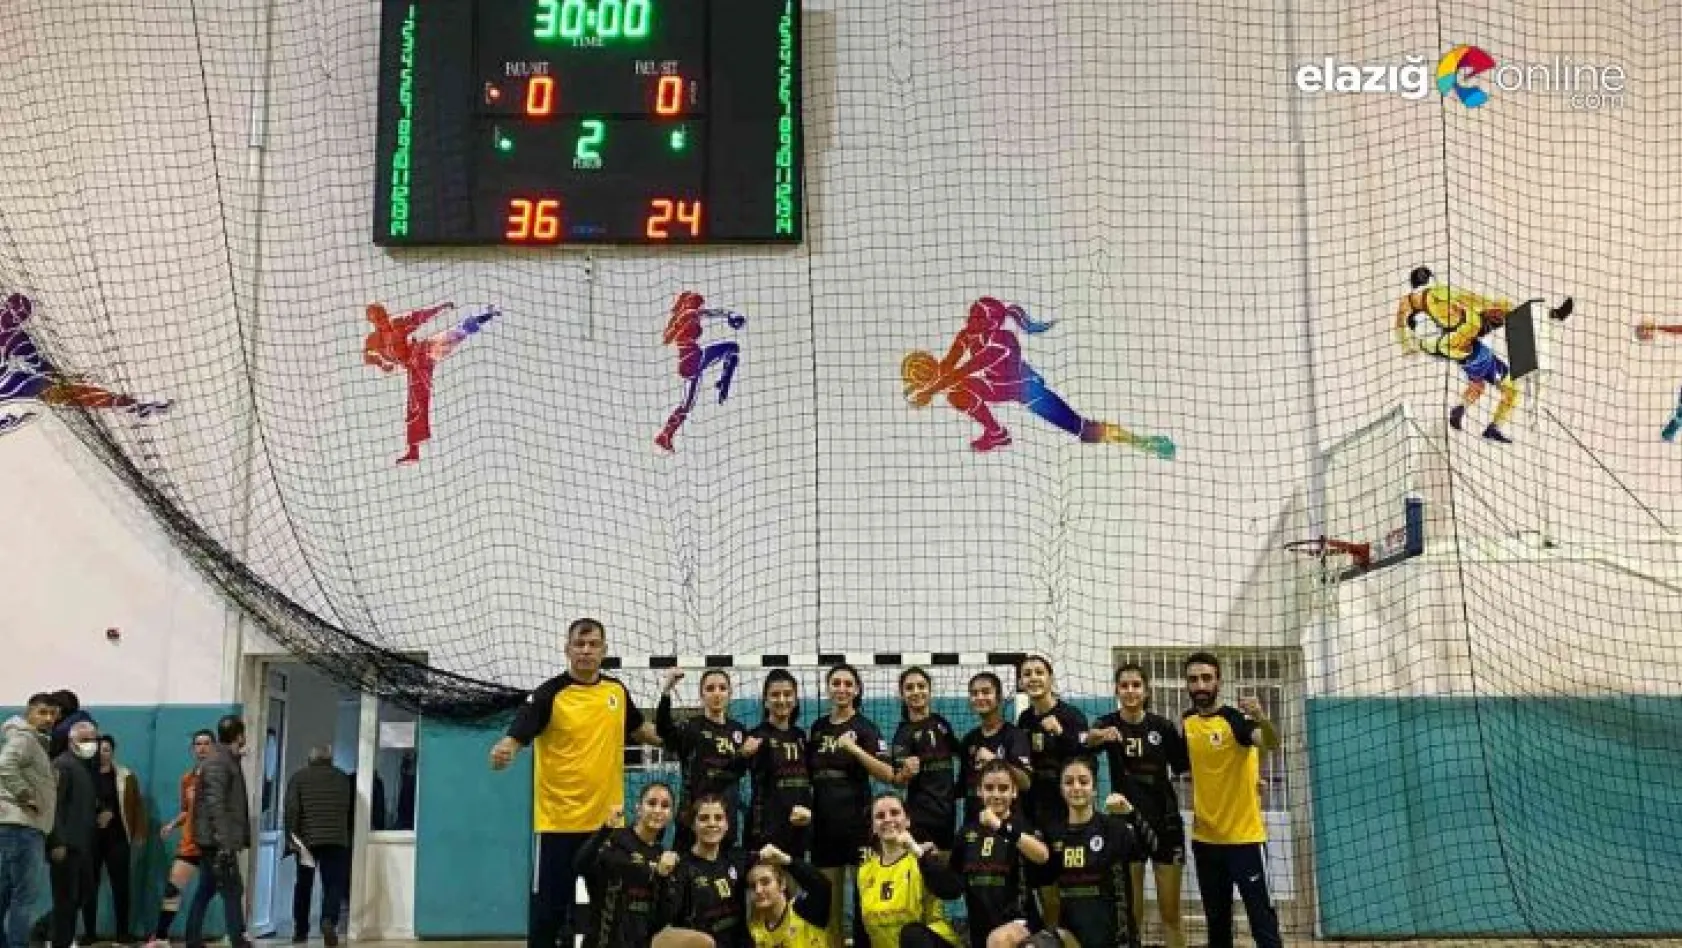 Elazığ SYSK, Rize ekibi Olimpik Pazar'ı 36-24 yendi